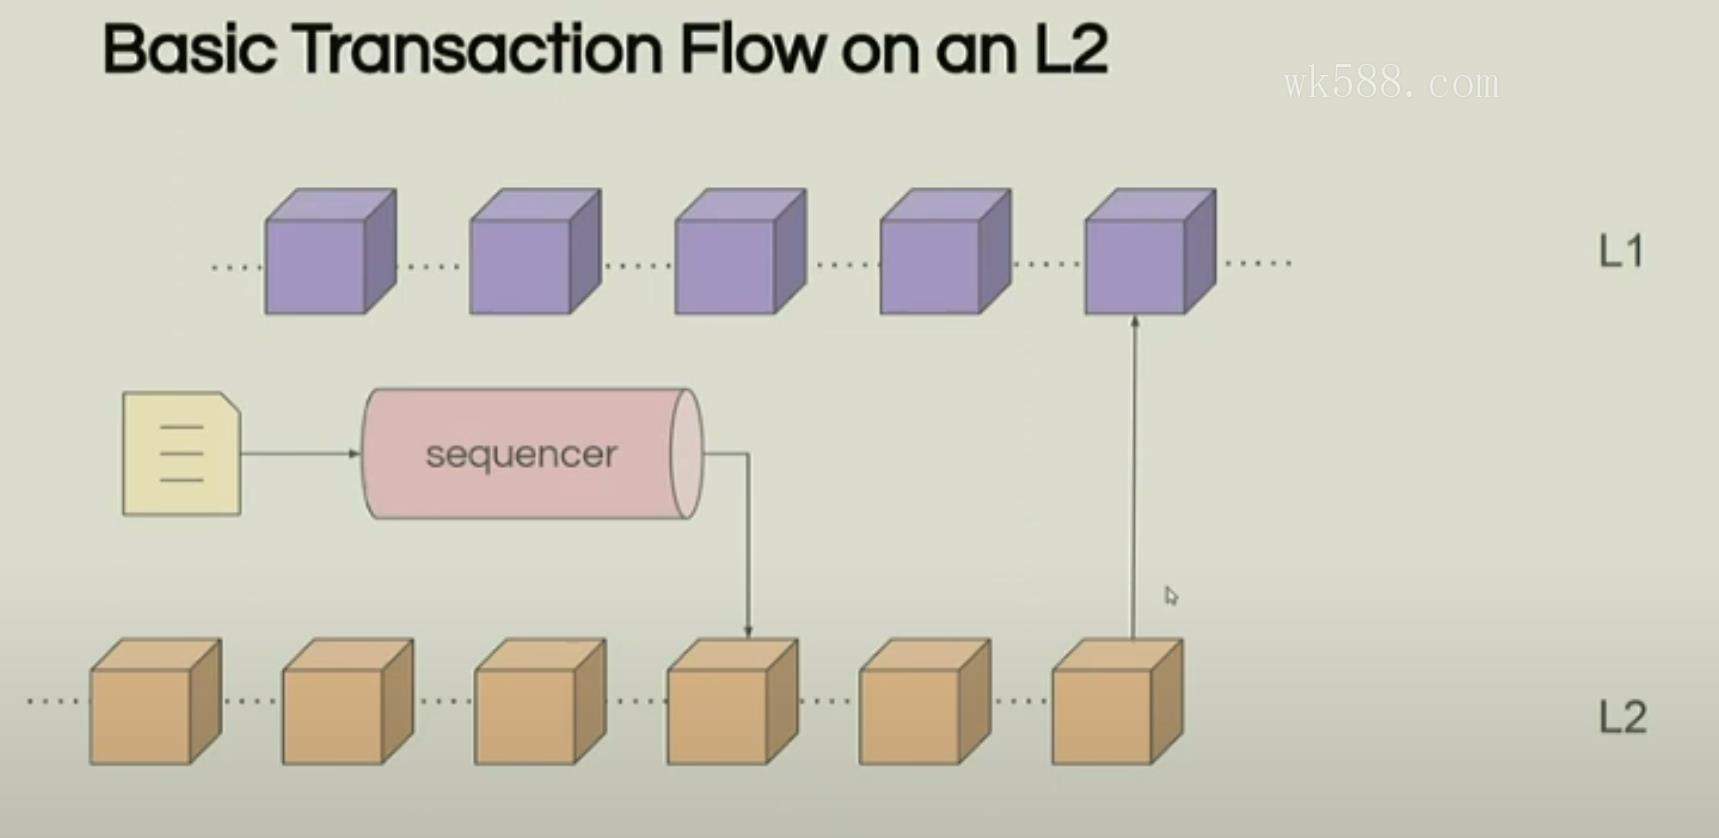 Zircuit：实用主义的新L2解决方案